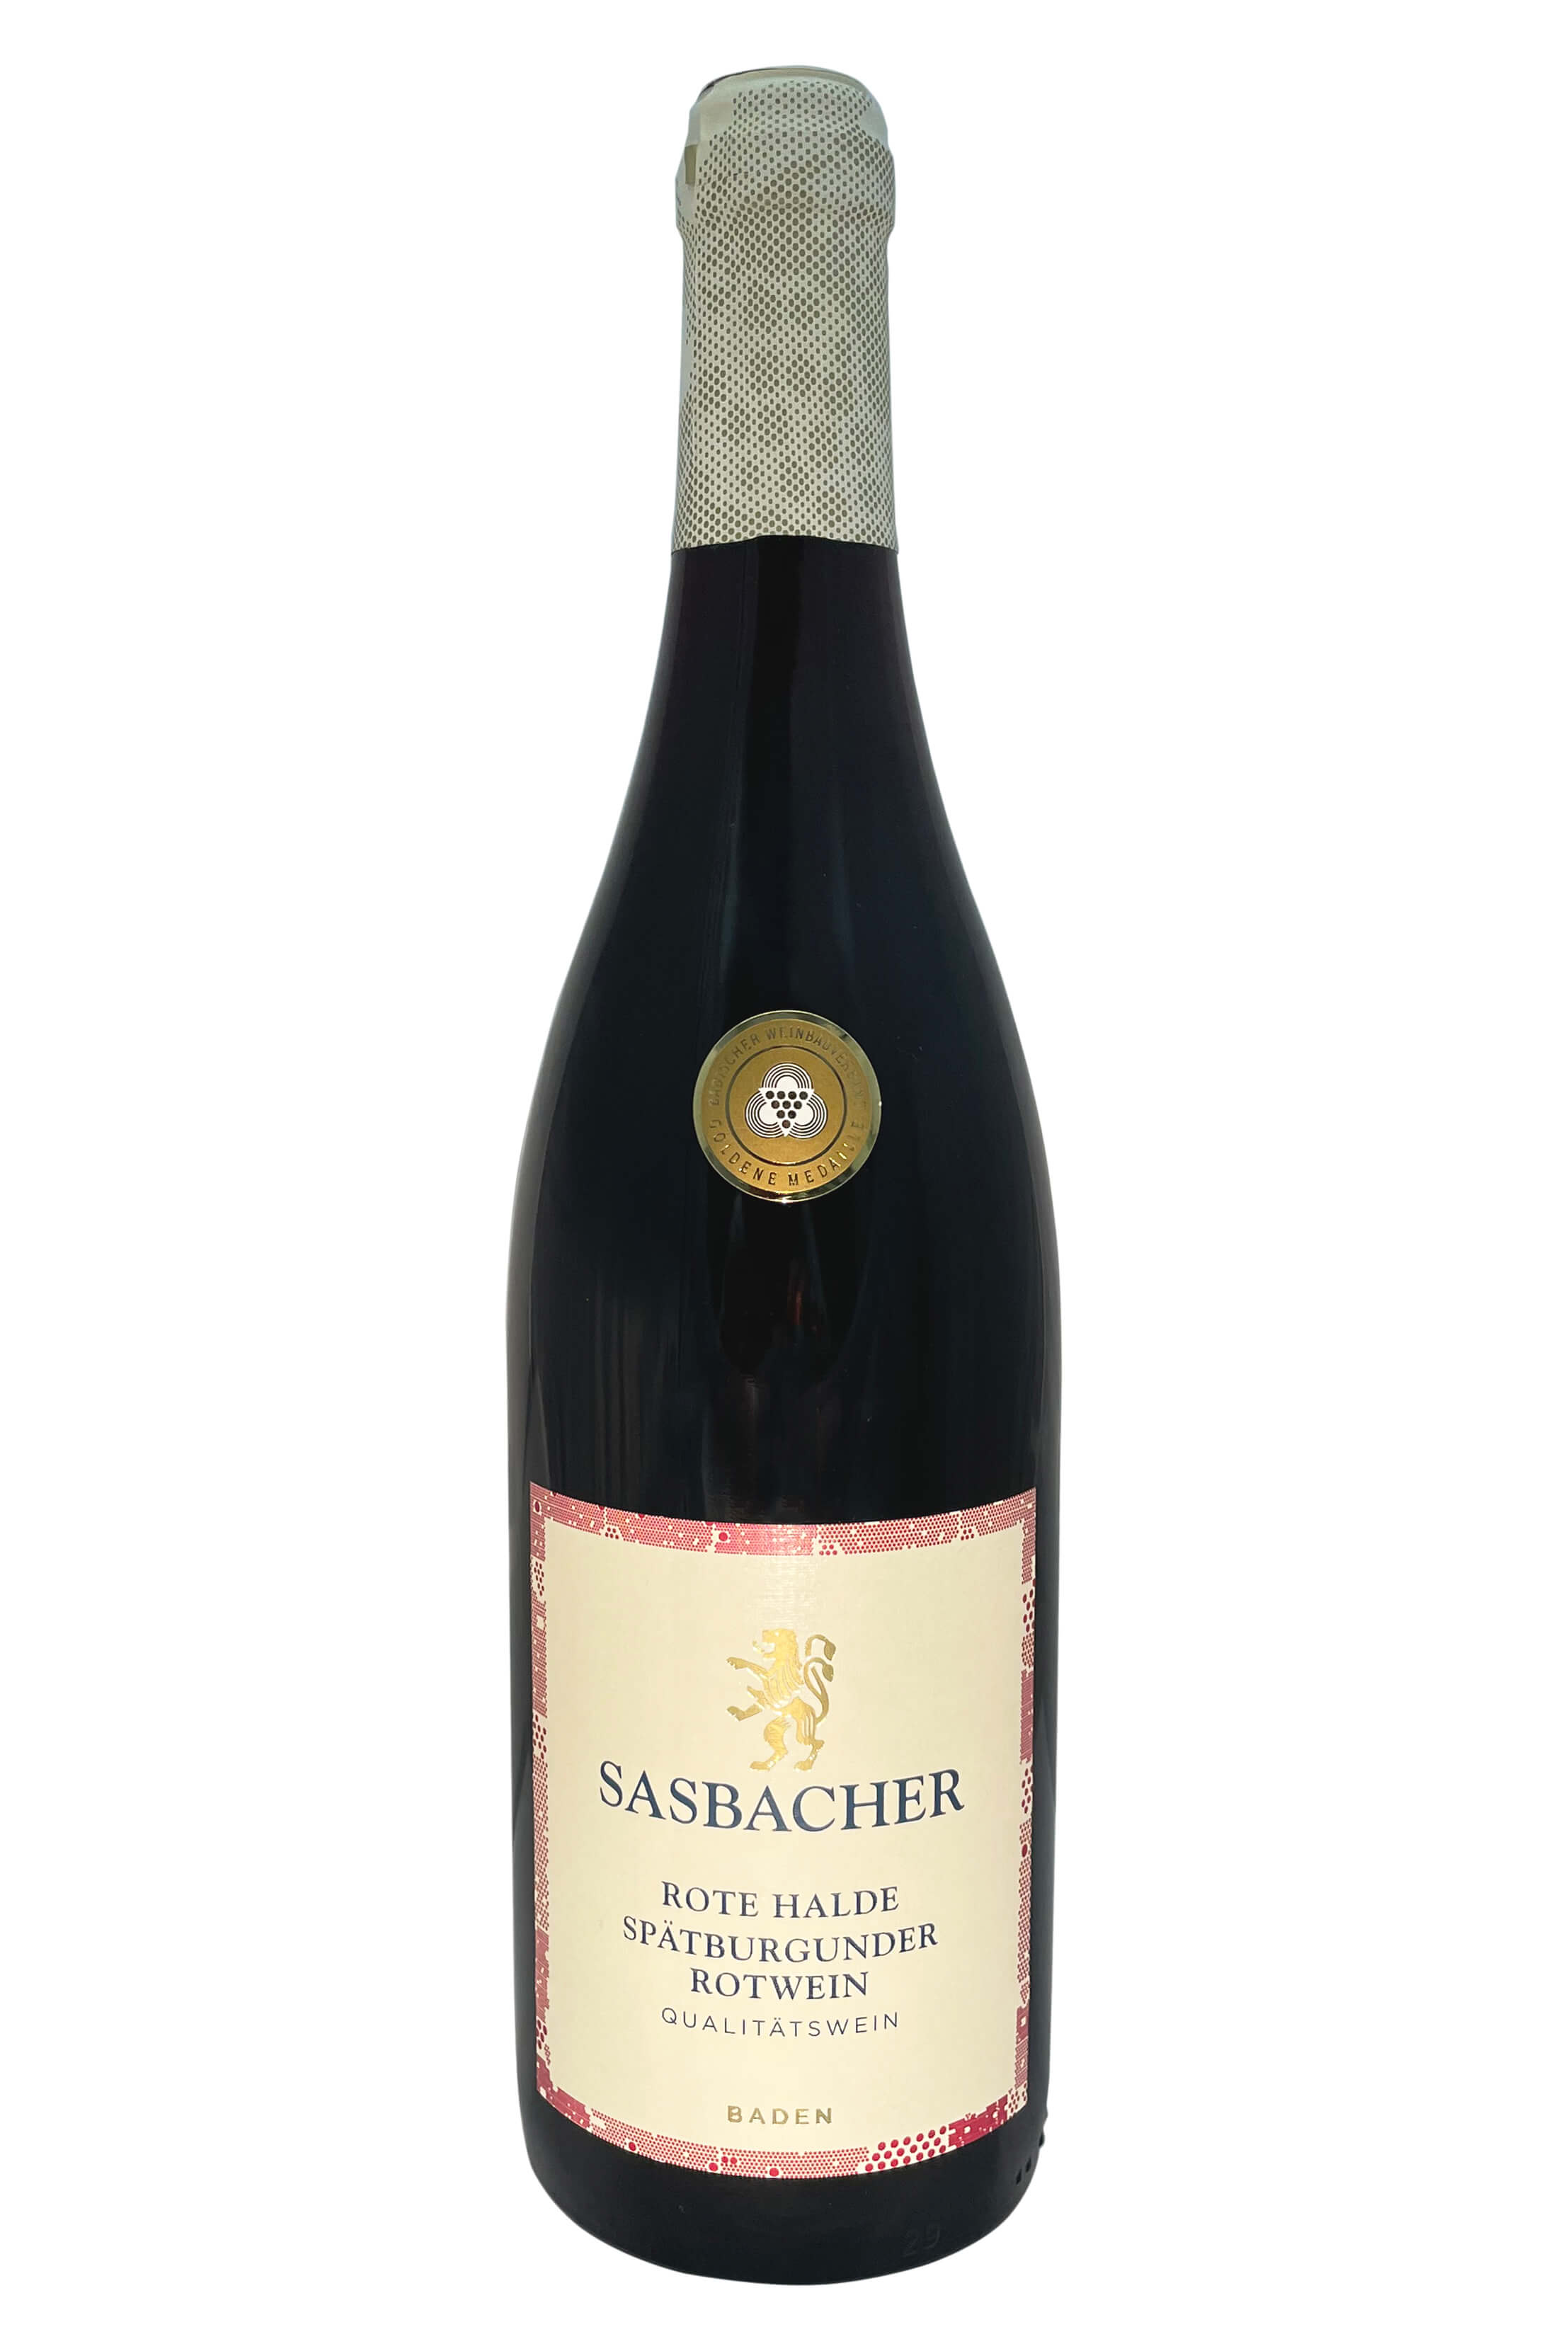 Sasbacher Rote Halde Spätburgunder Rotwein Qba 0,75l - Wein von Baumann